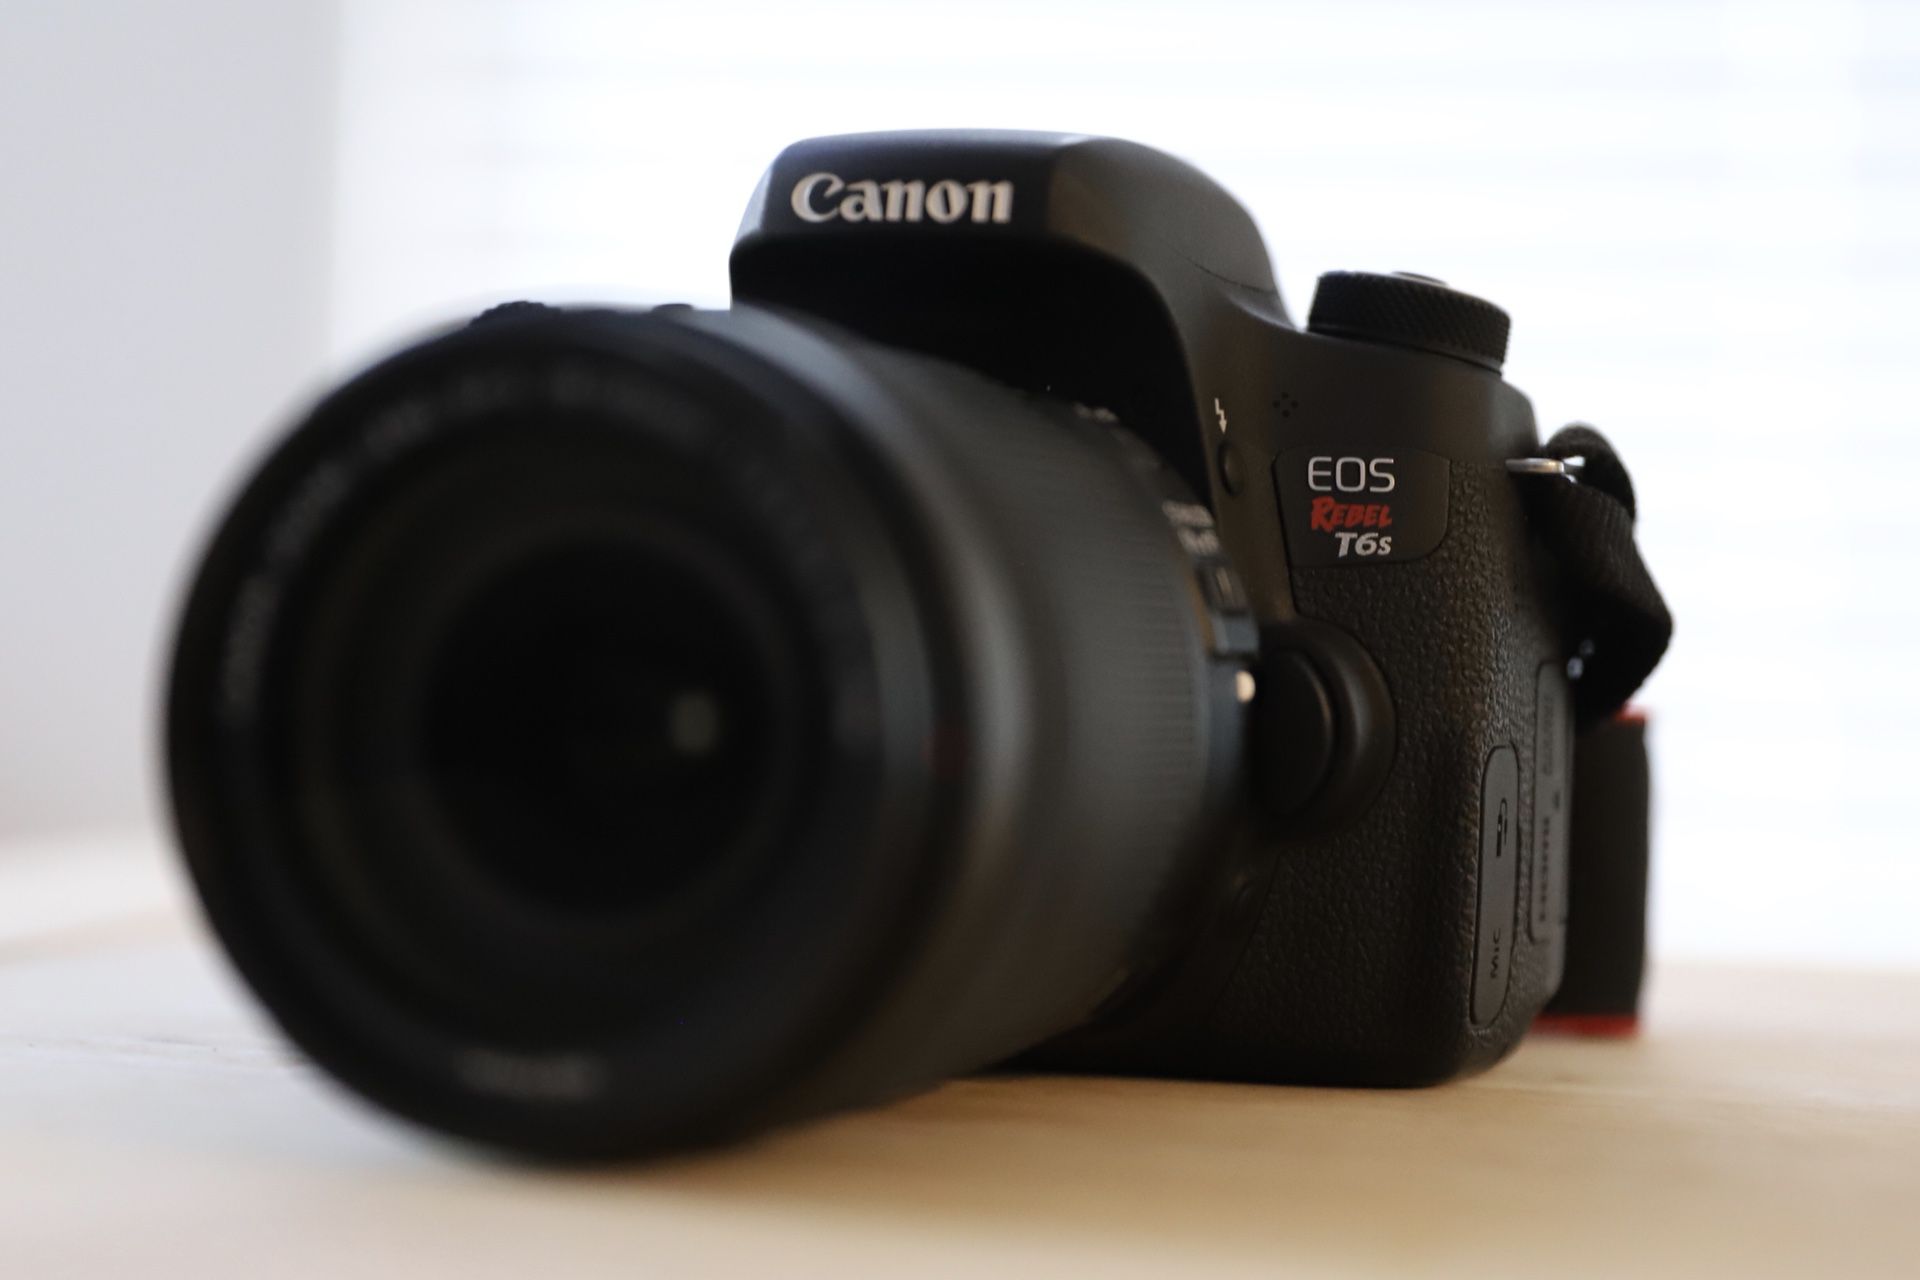 Canon EOS rebel T6s